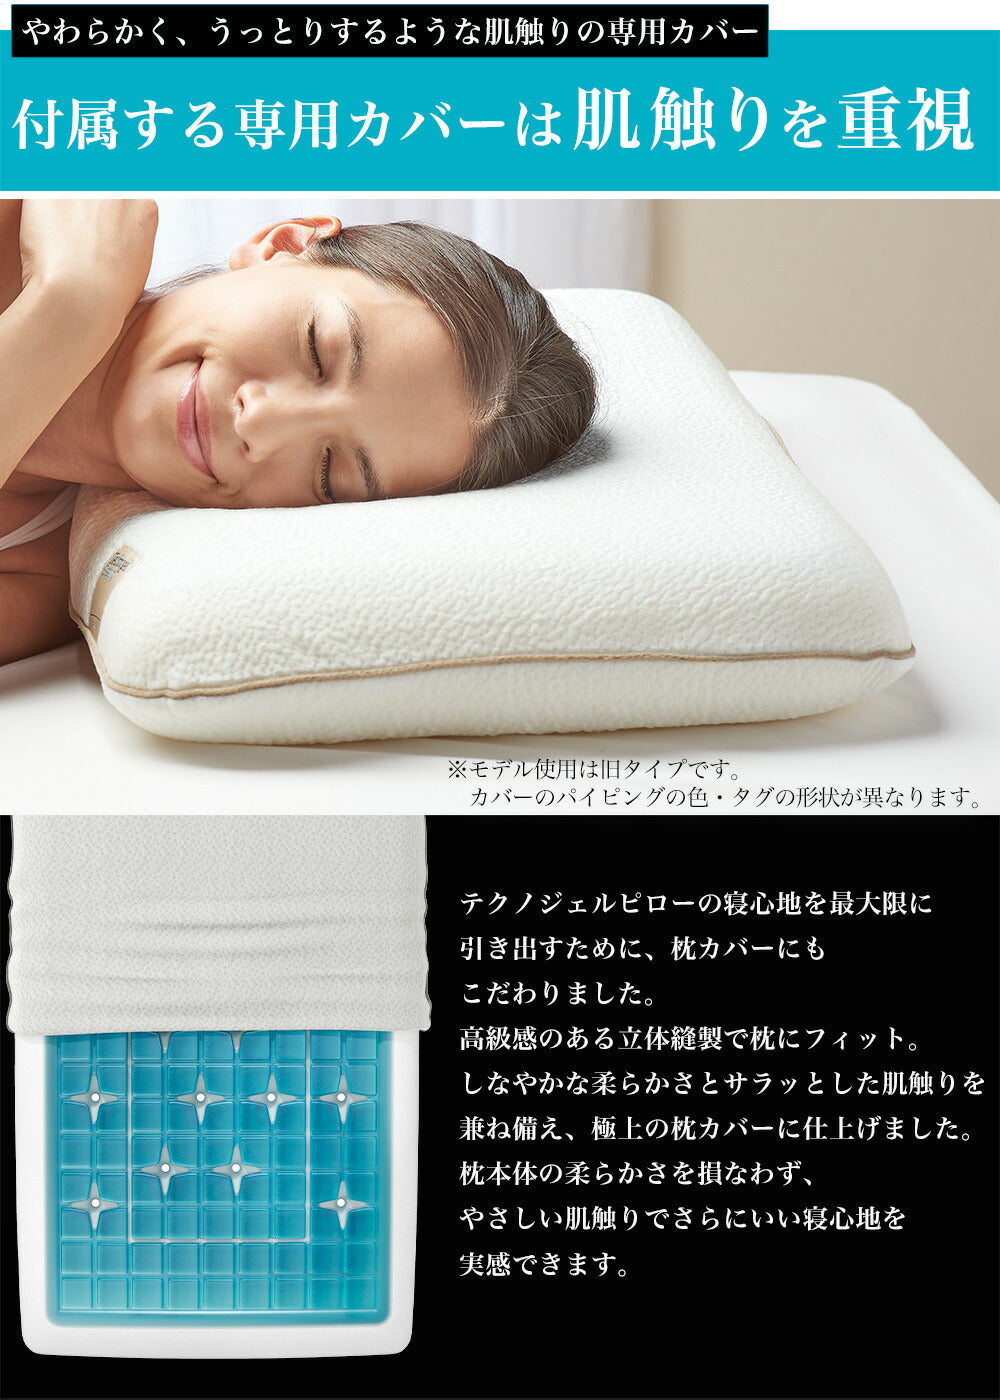 テクノジェル デラックスピロー2 type9 – 枕と眠りのおやすみショップ 